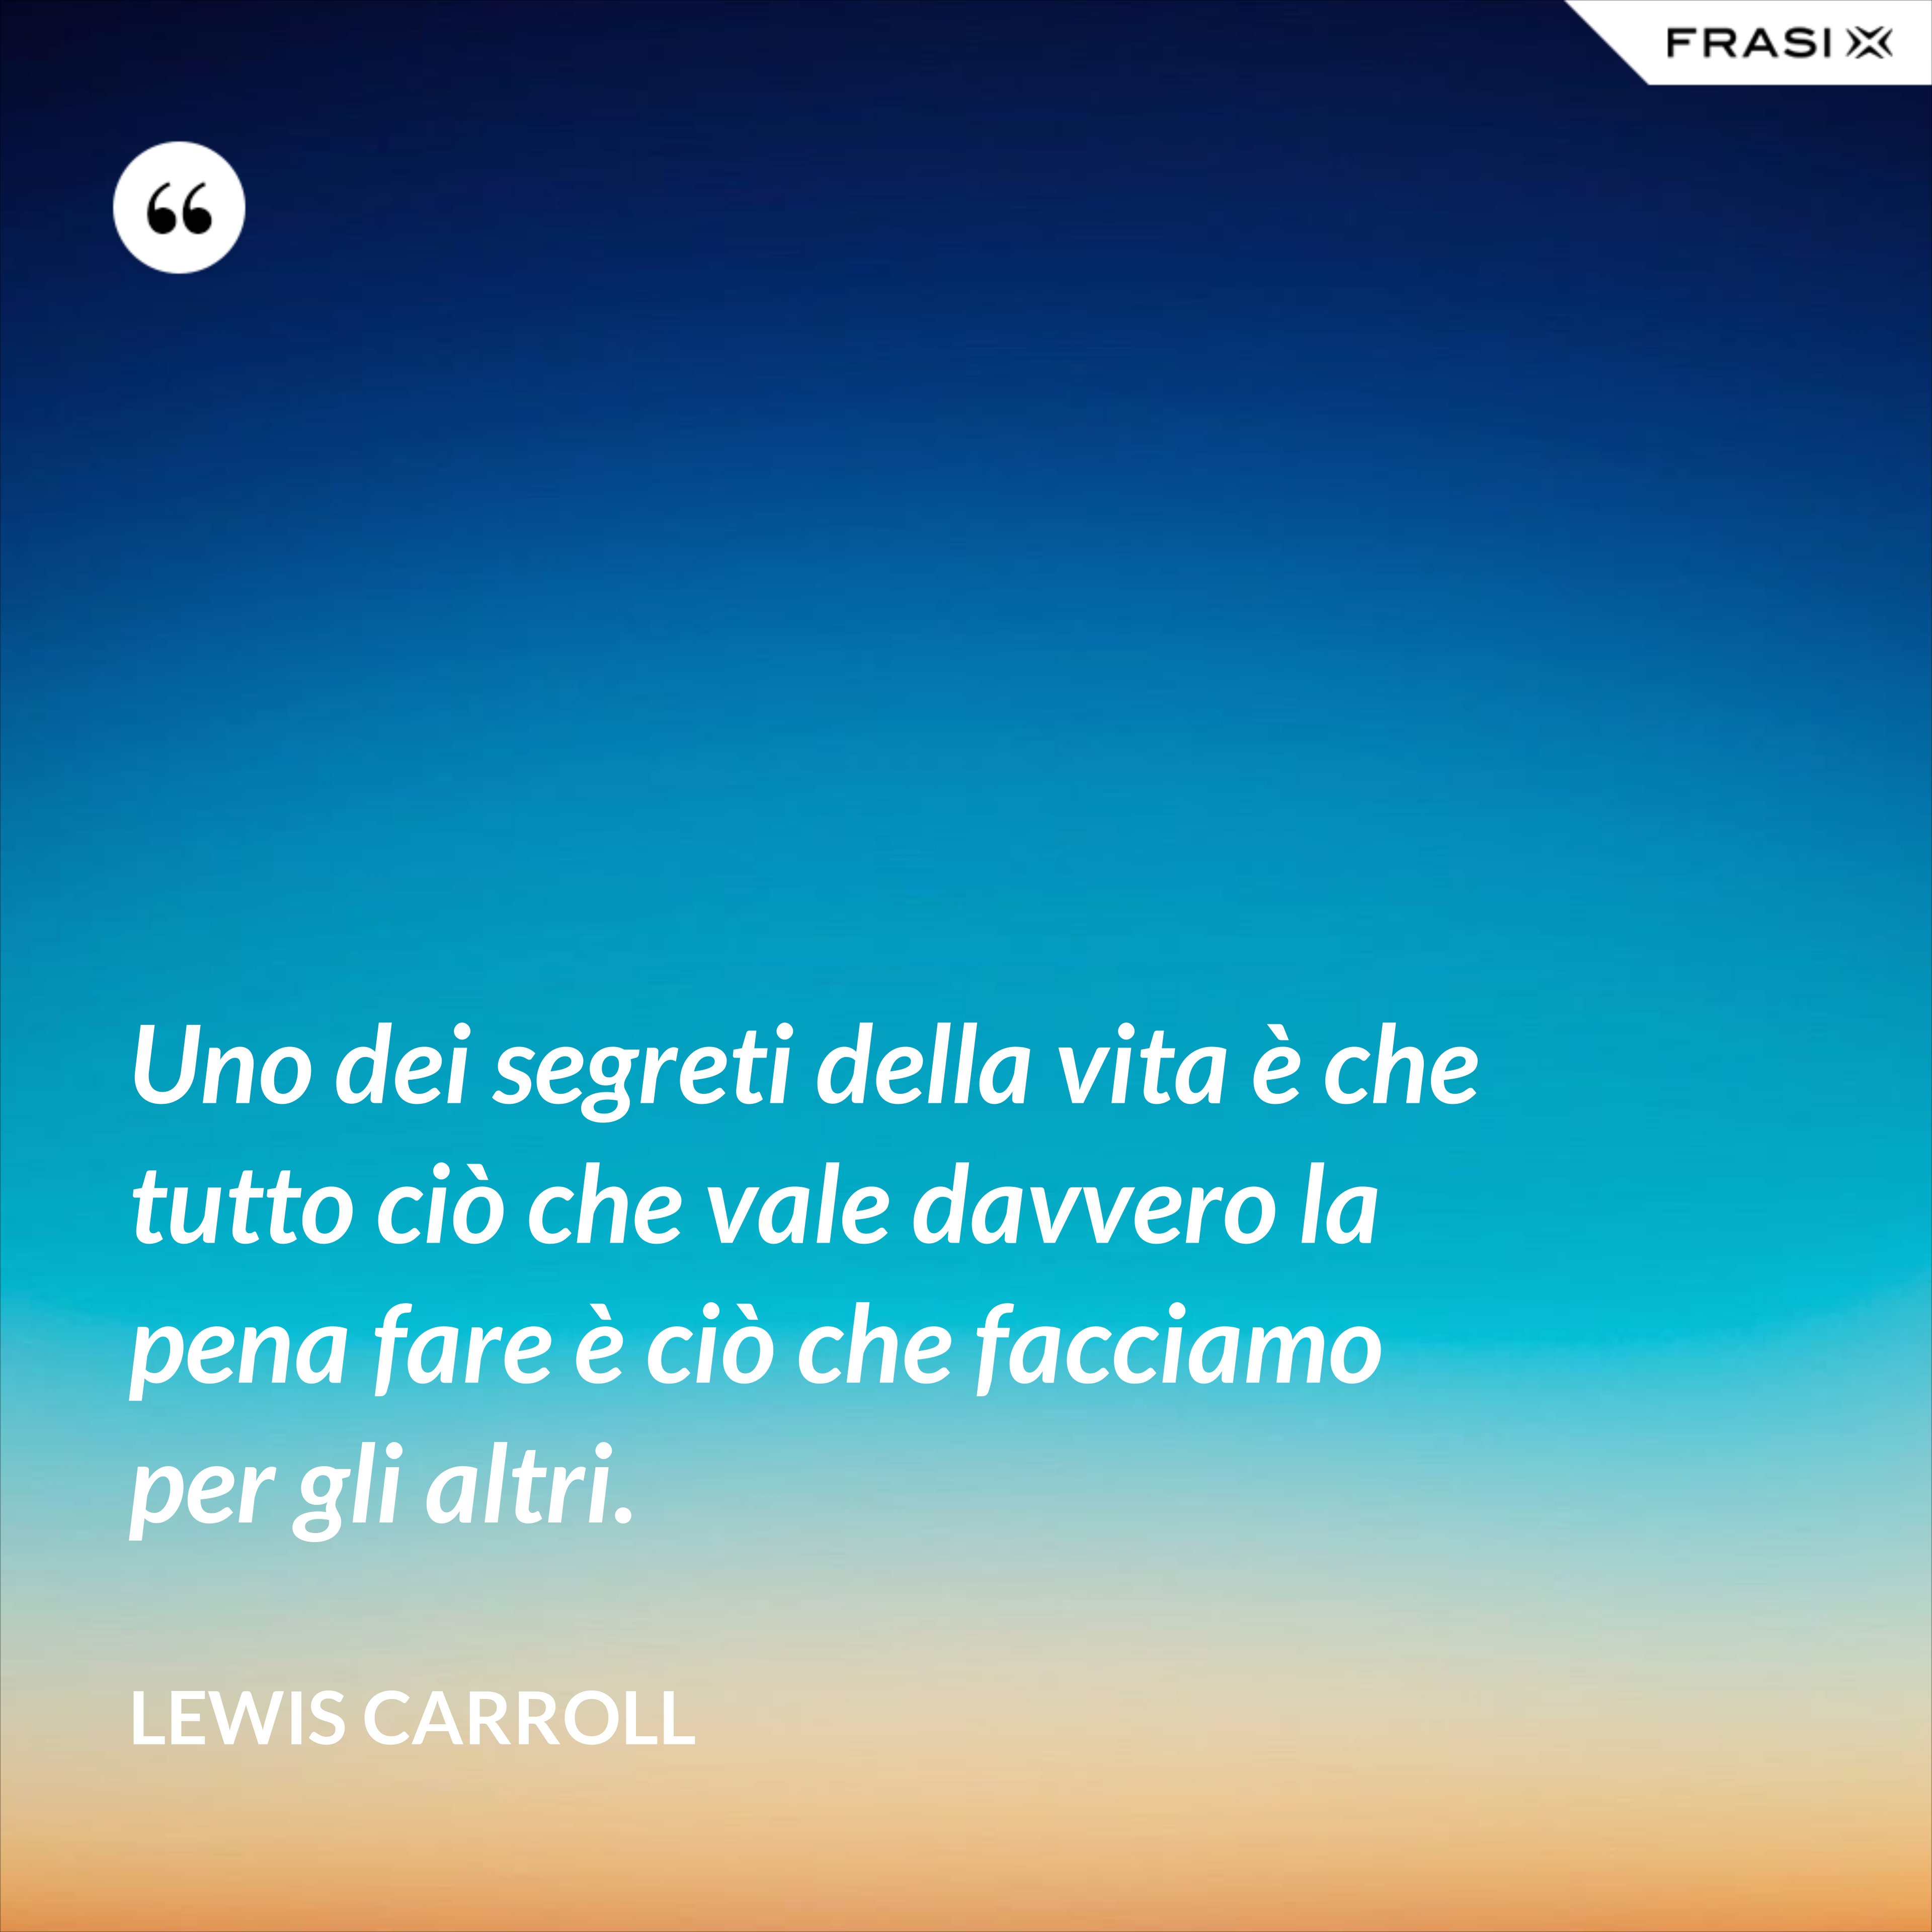 Uno dei segreti della vita è che tutto ciò che vale davvero la pena fare è ciò che facciamo per gli altri. - Lewis Carroll